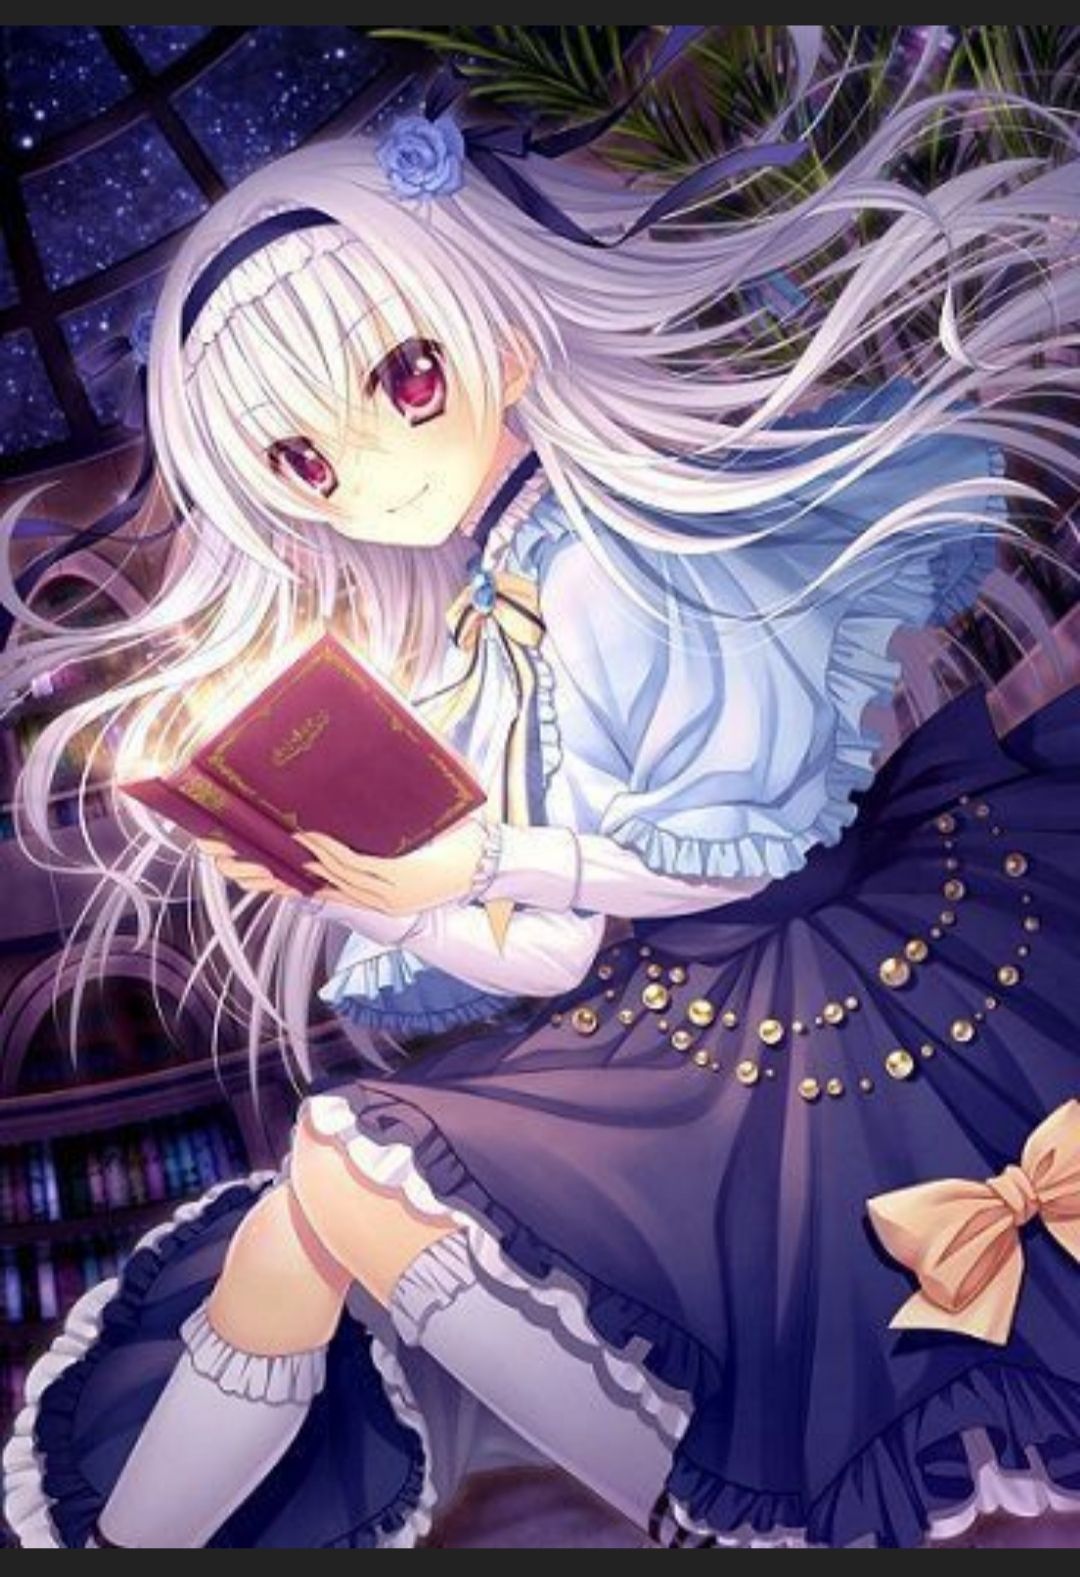 Anime girl tóc trắng: Cô gái trong bức hình này có mái tóc trắng tinh khôi, đôi mắt quyến rũ và nụ cười tươi tắn. Cô ấy đang sẵn sàng cho một chuyến phiêu lưu đầy thử thách và bạn có thể cùng cô ấy khám phá thế giới của anime.